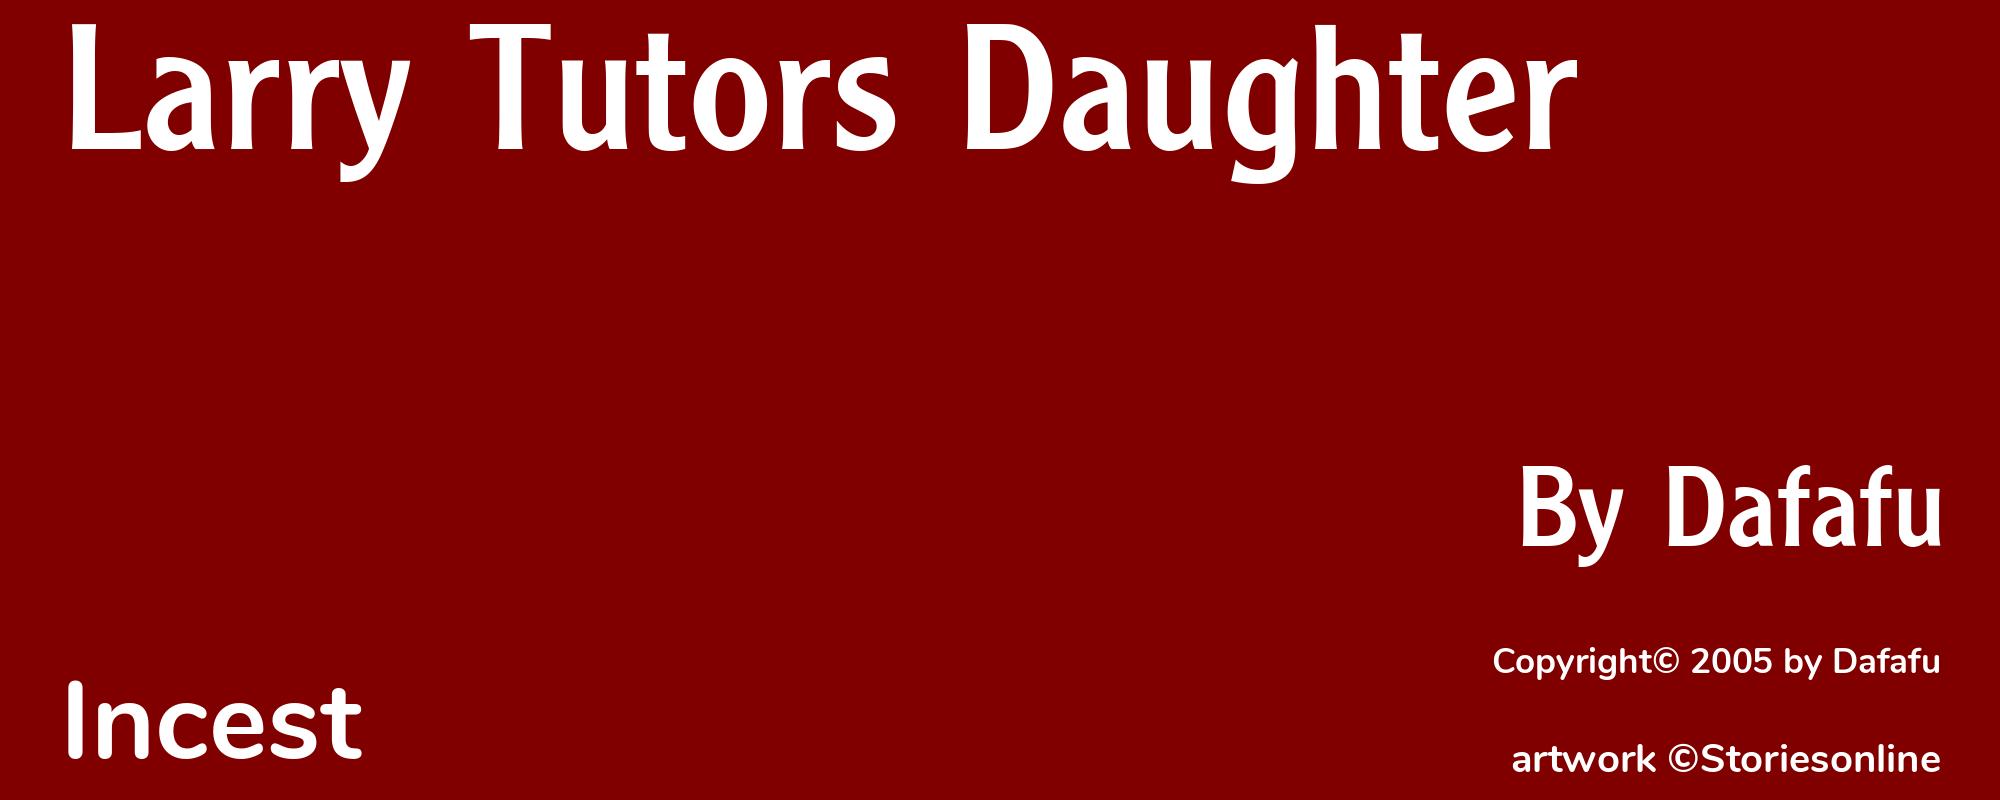 Larry Tutors Daughter - Cover